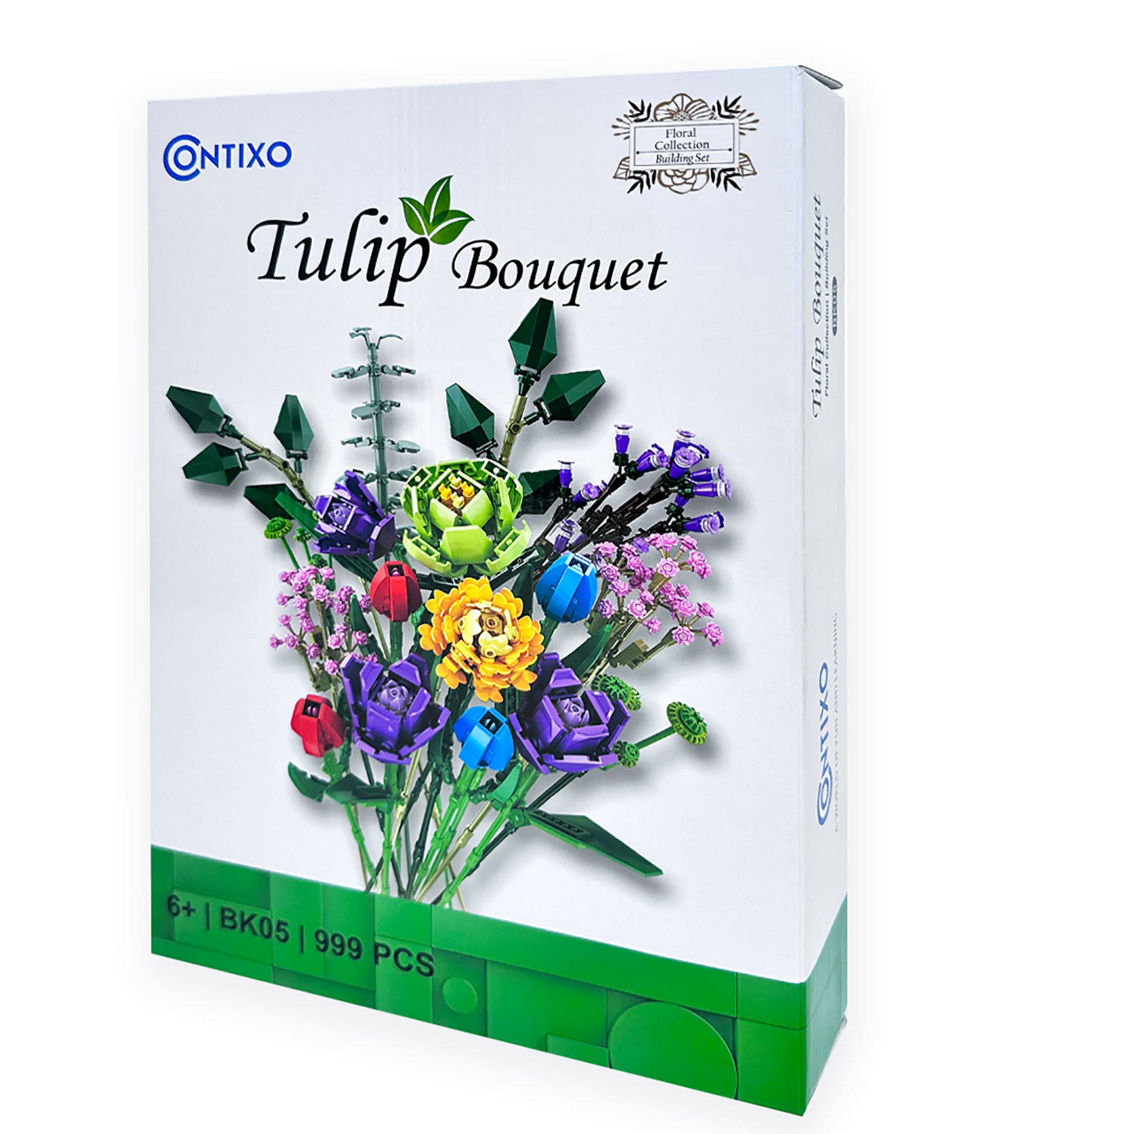 Contixo BK05 Tulip Bouquet Floral Collection Building Block Set - Image 2 of 5